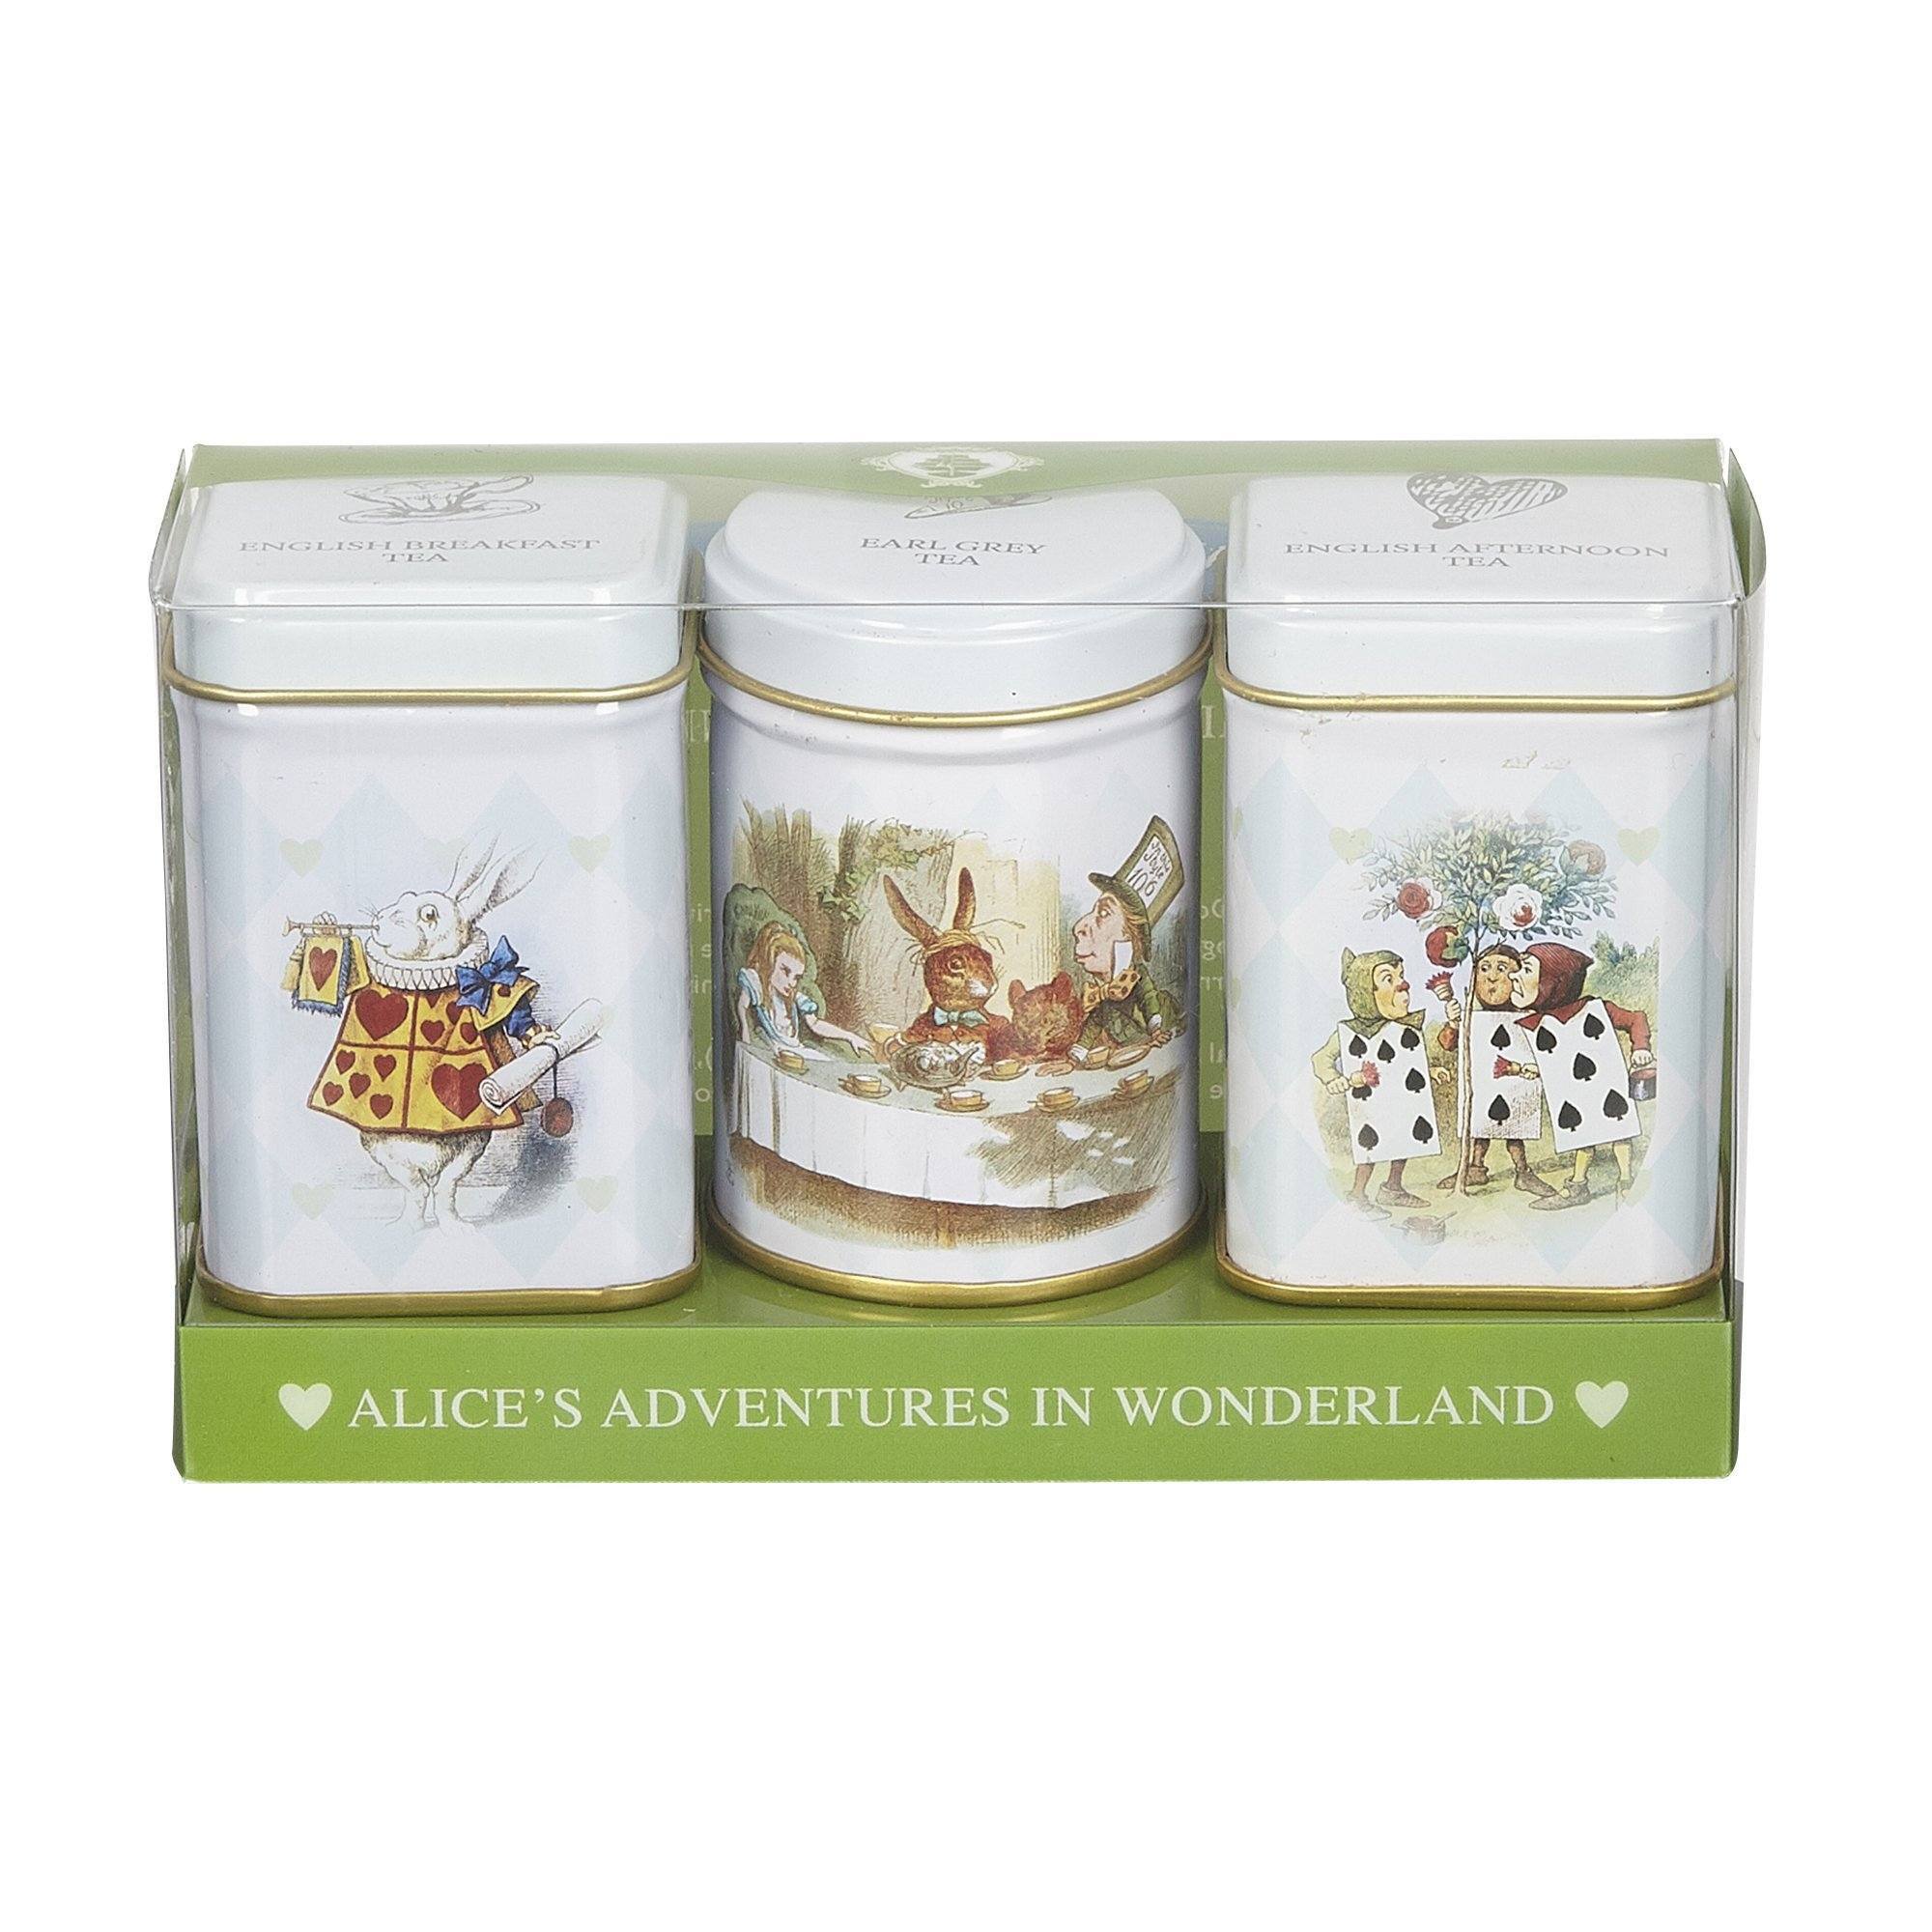 Alice in Wonderland Mini Tea Tins gift with loose-leaf black tea Black Tea New English Teas 